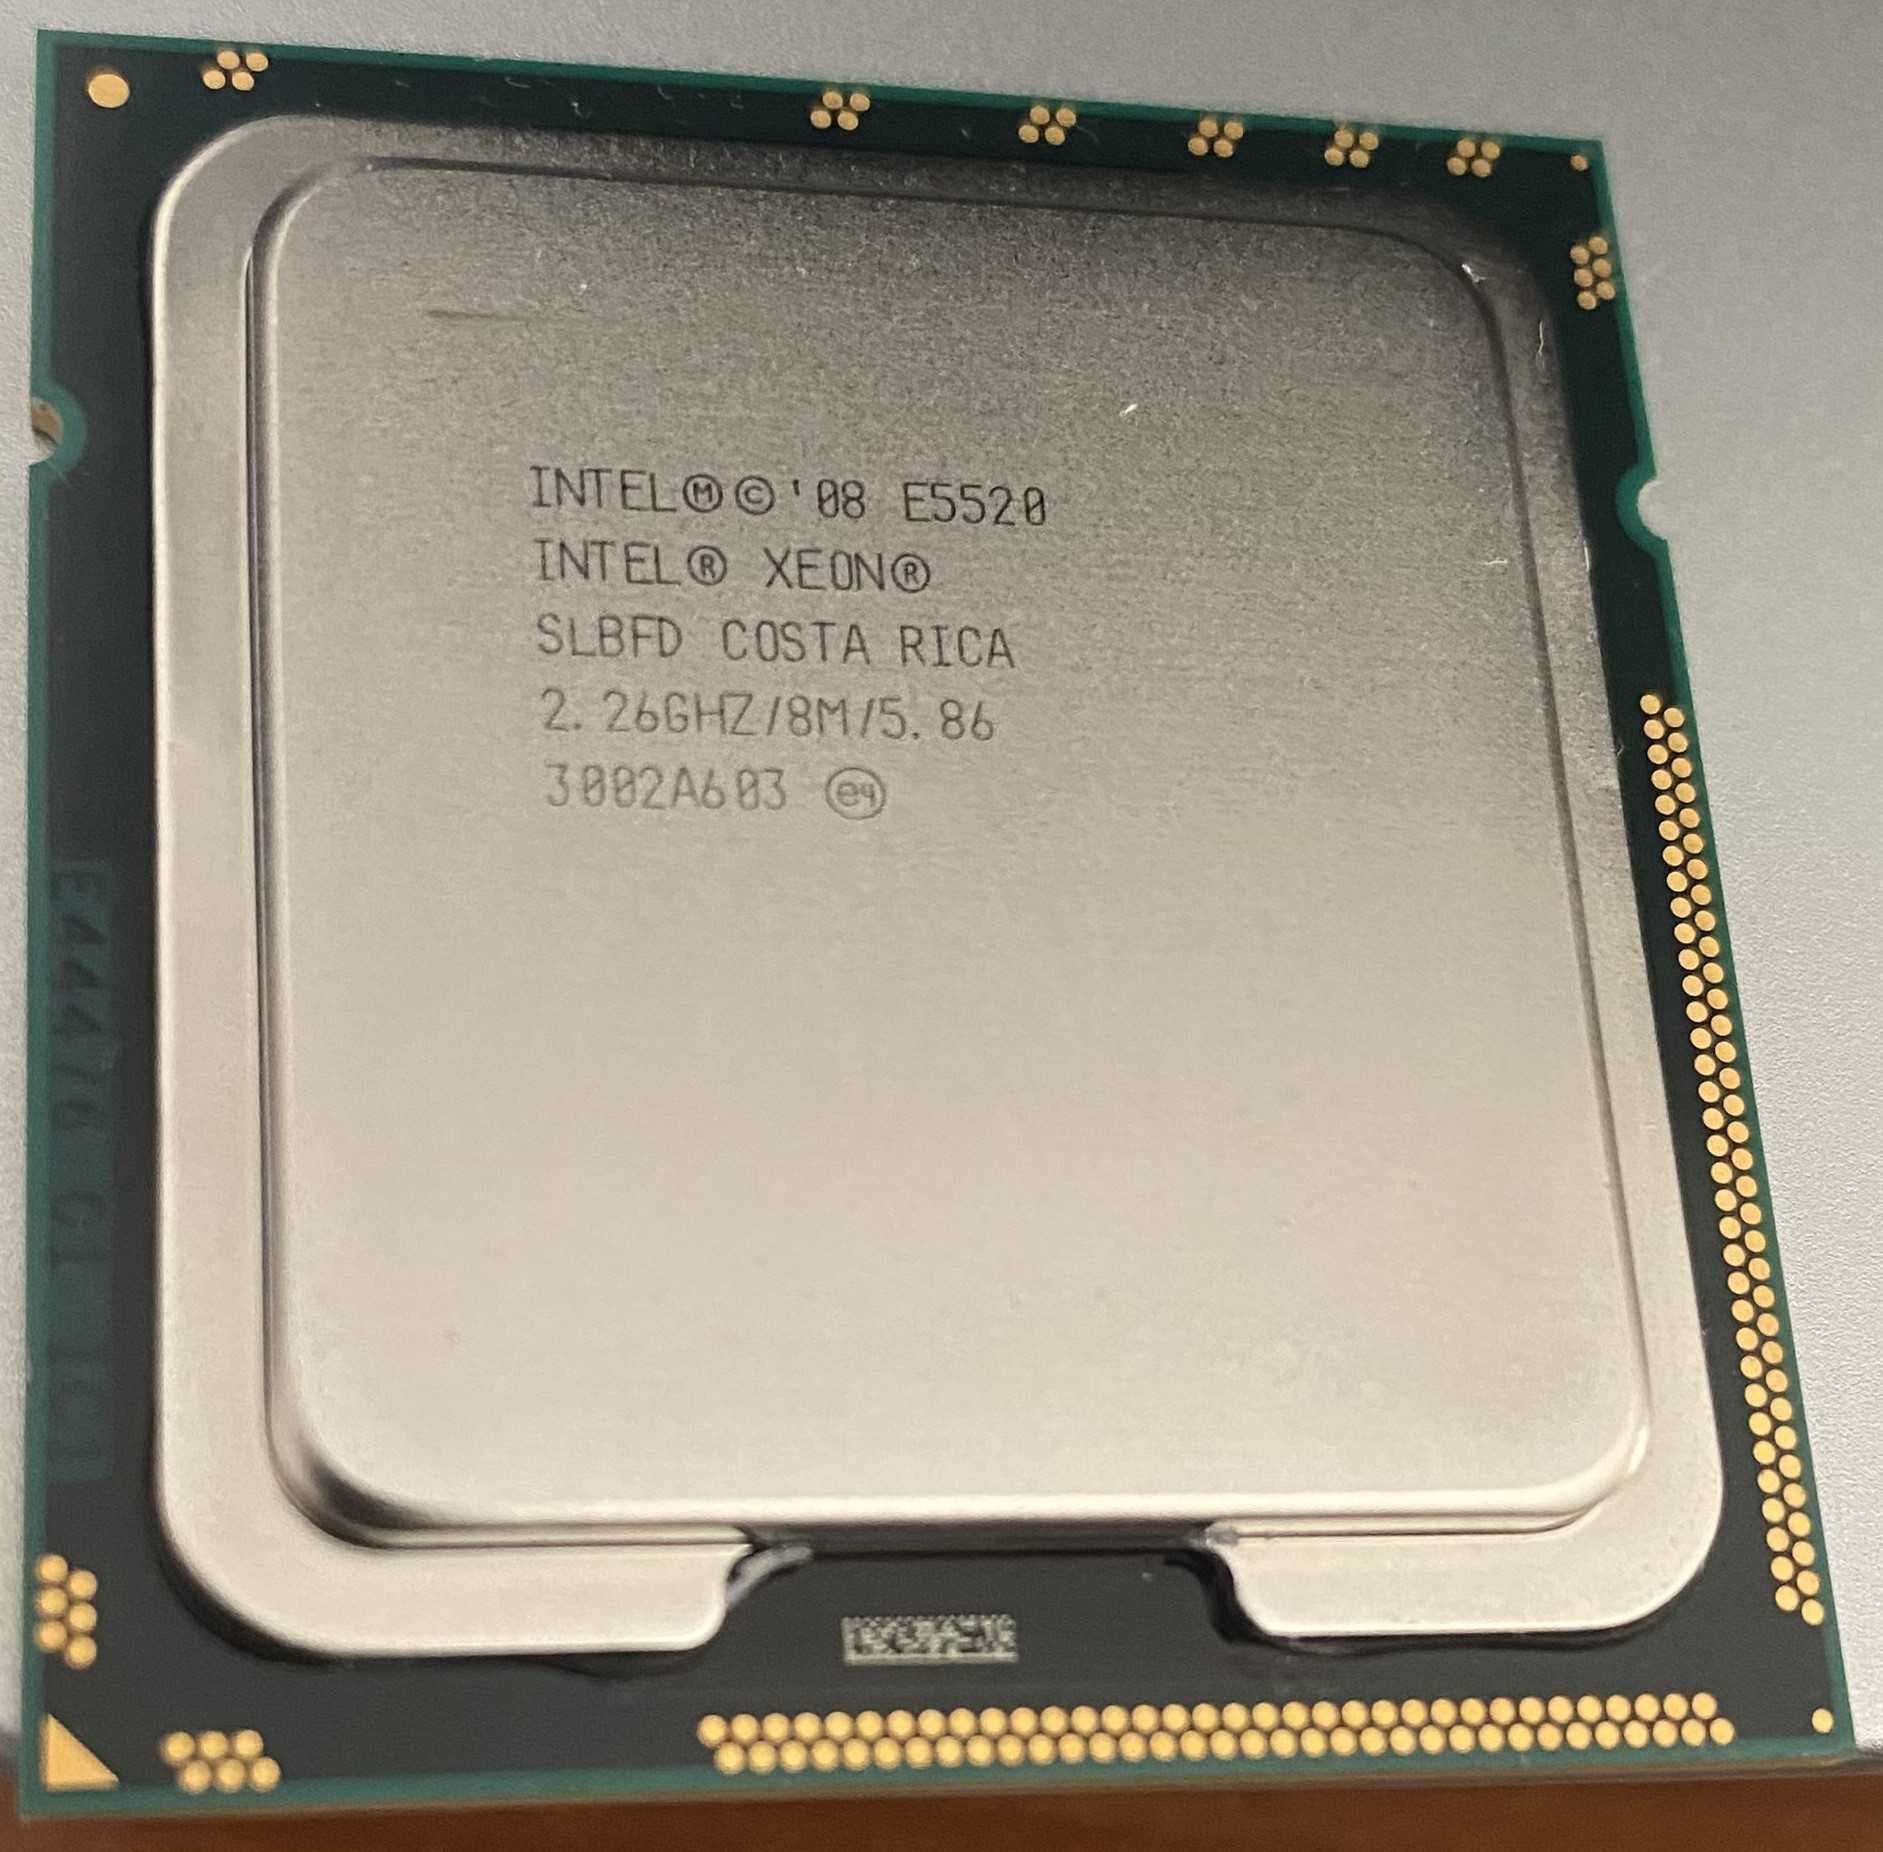 Processador Intel Xeon E5520, cache 8M, 2.26GHz